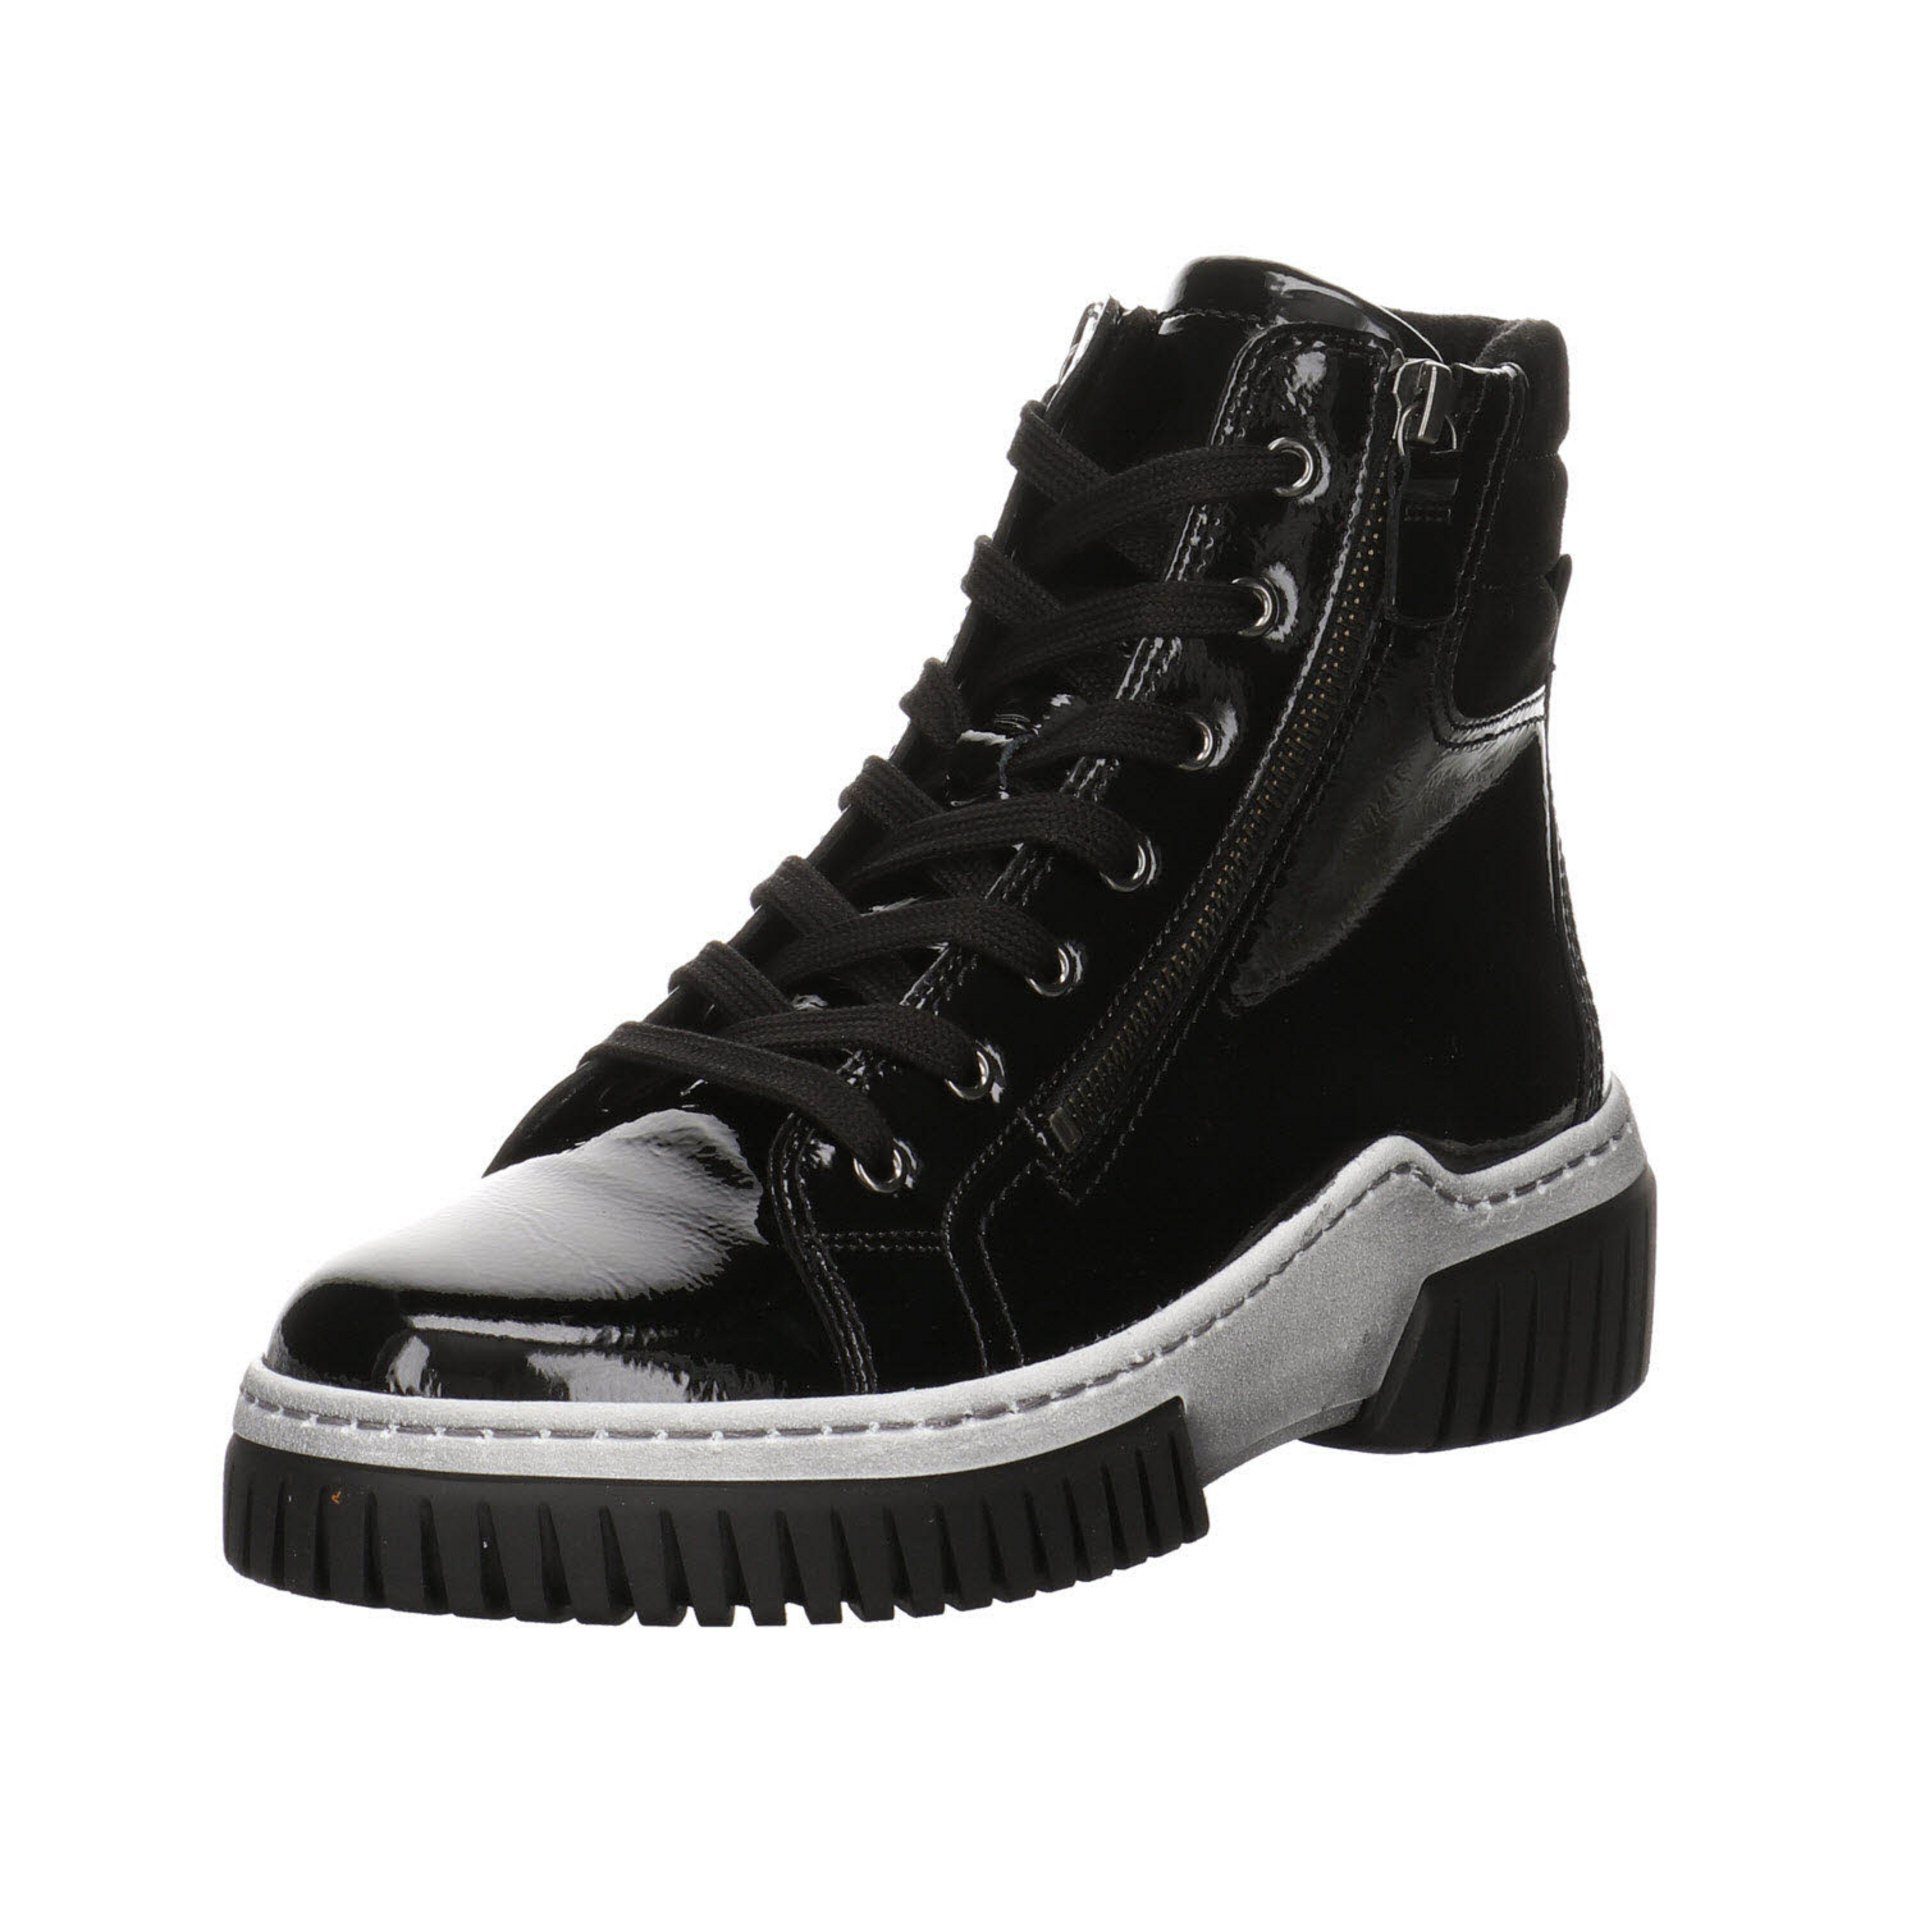 Gabor Damen Boots schwarz(altsilber) Freizeit Schnürstiefel Elegant Lackleder Schuhe Stiefeletten